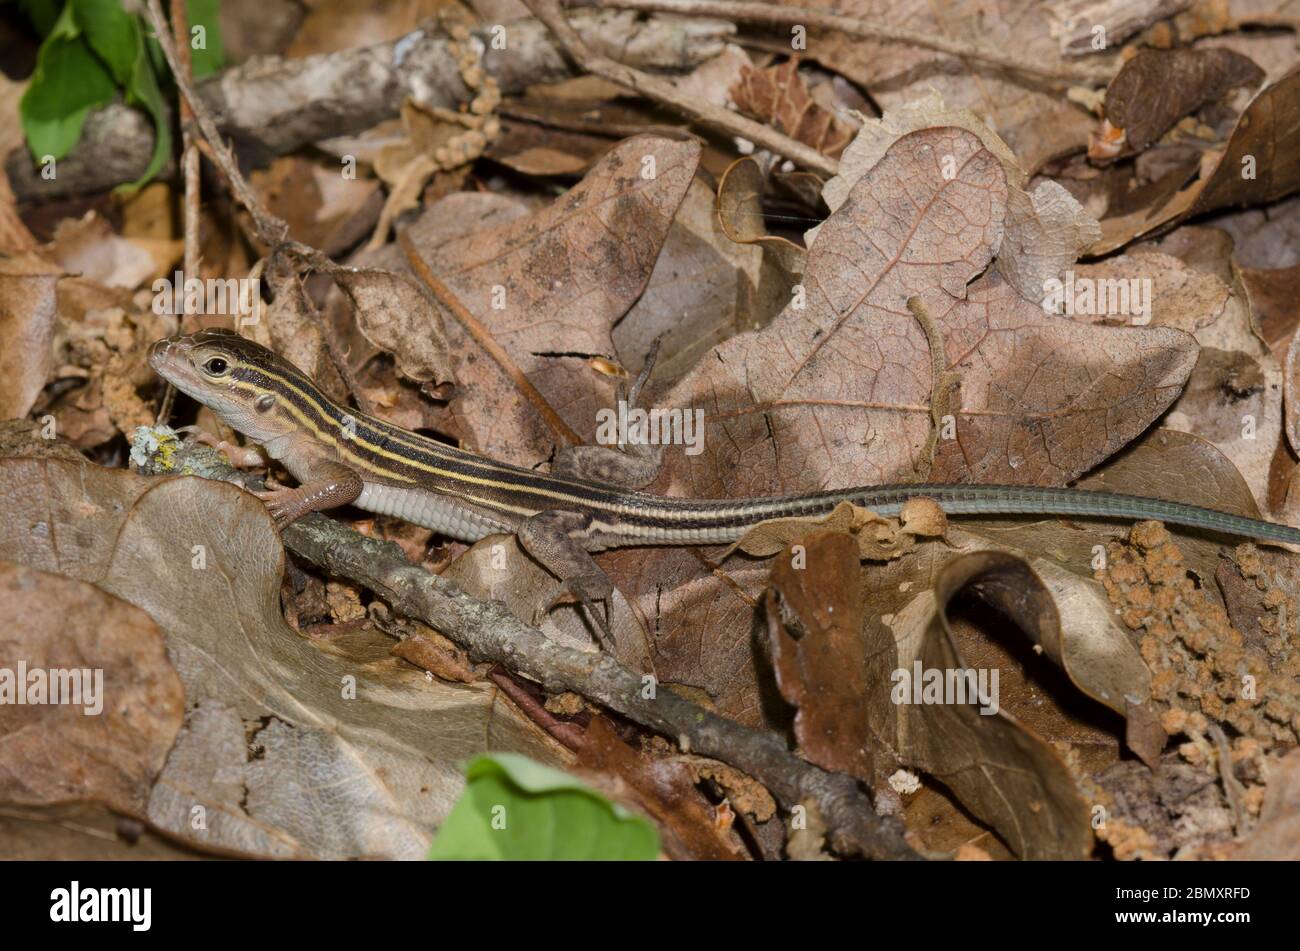 Sechsliniger Racerunner, Aspidoscelis sexlineata, in Laub-Wurf auf Waldboden Stockfoto